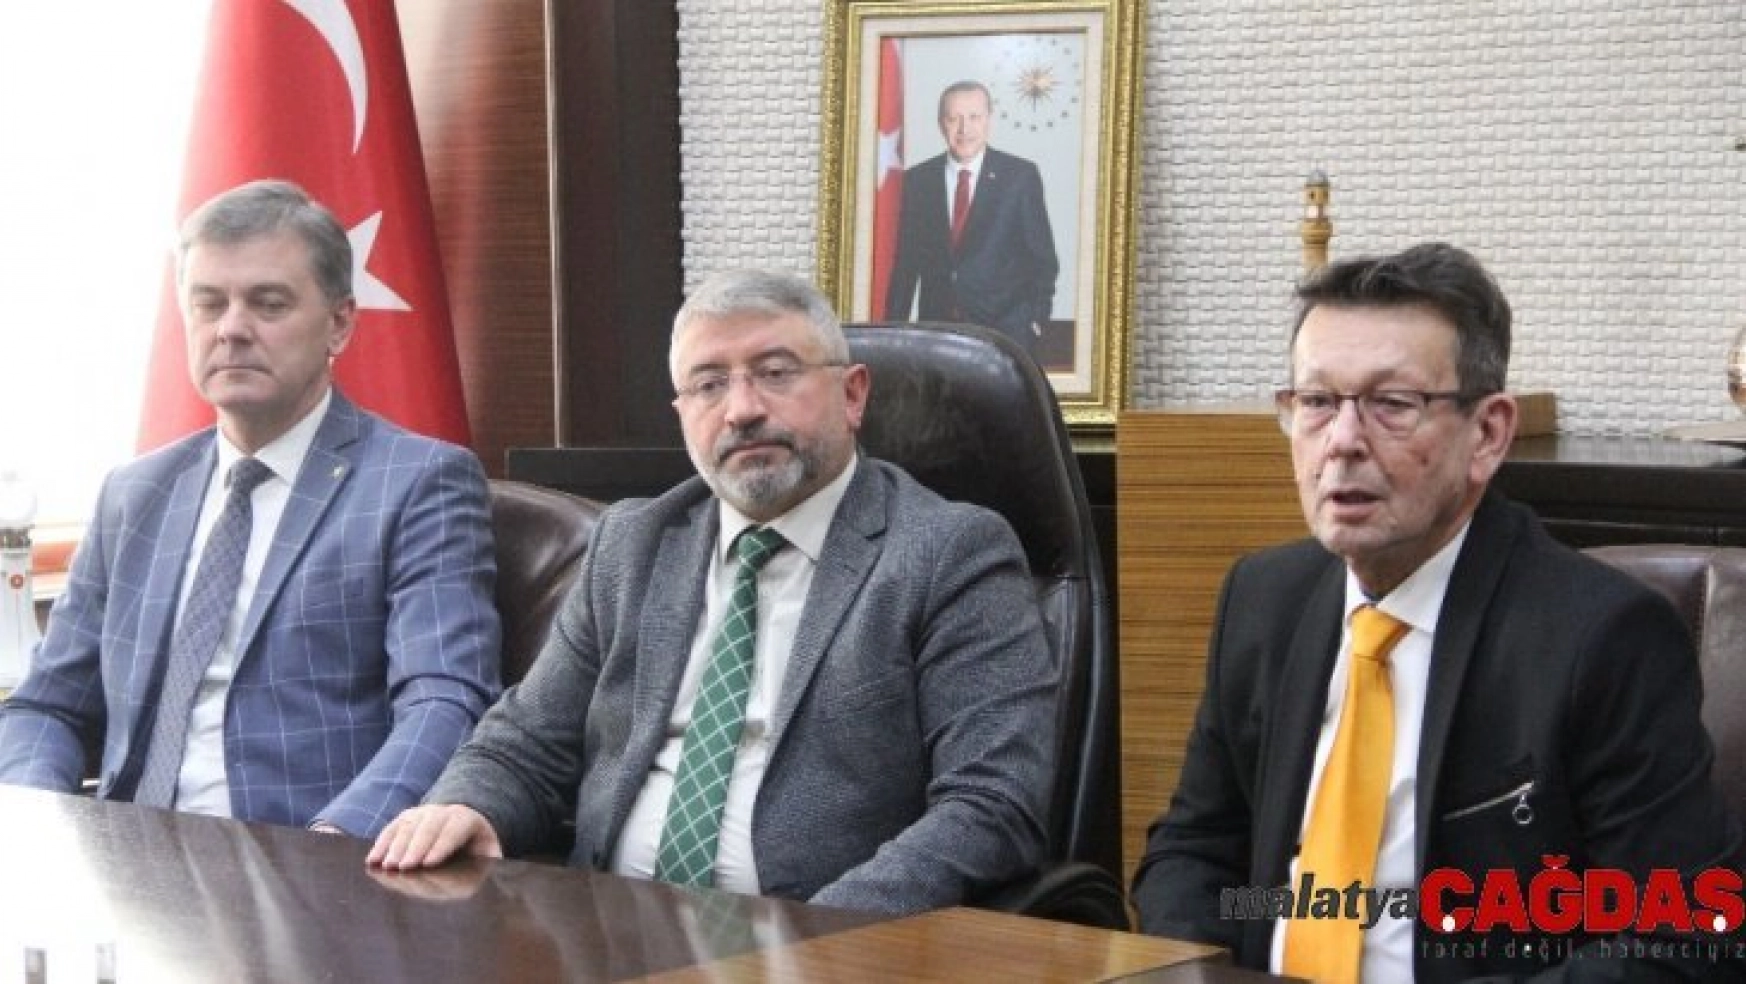 Telsiai ve Szarvas Belediye Başkanları'ndan Aşgın'a ziyaret